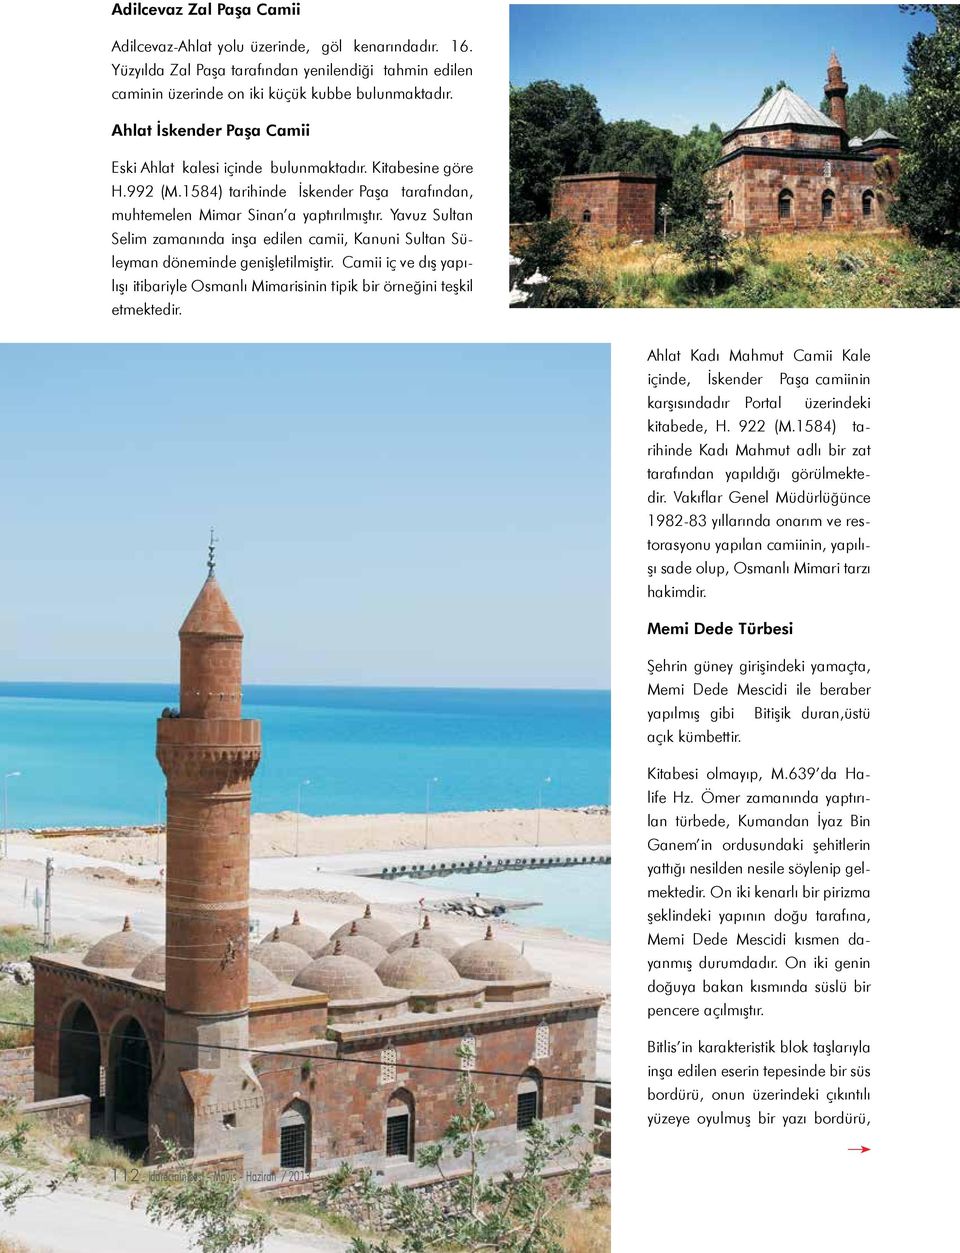 Yavuz Sultan Selim zamanında inşa edilen camii, Kanuni Sultan Süleyman döneminde genişletilmiştir. Camii iç ve dış yapı- lışı itibariyle Osmanlı Mimarisinin tipik bir örneğini teşkil etmektedir.